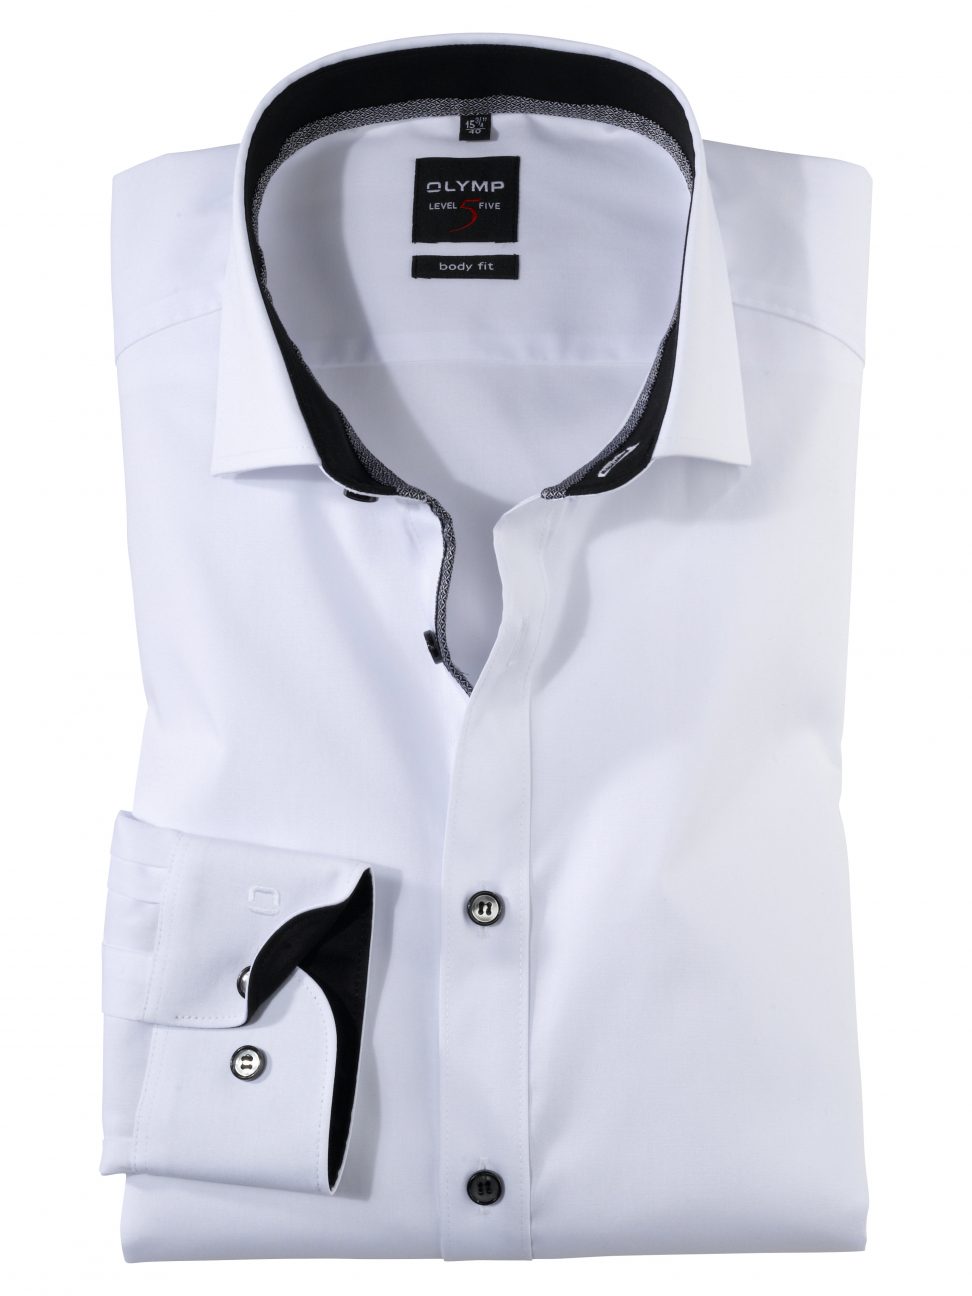 Koszula OLYMP Level Five body fit / biała /Royal Kent / 07676467